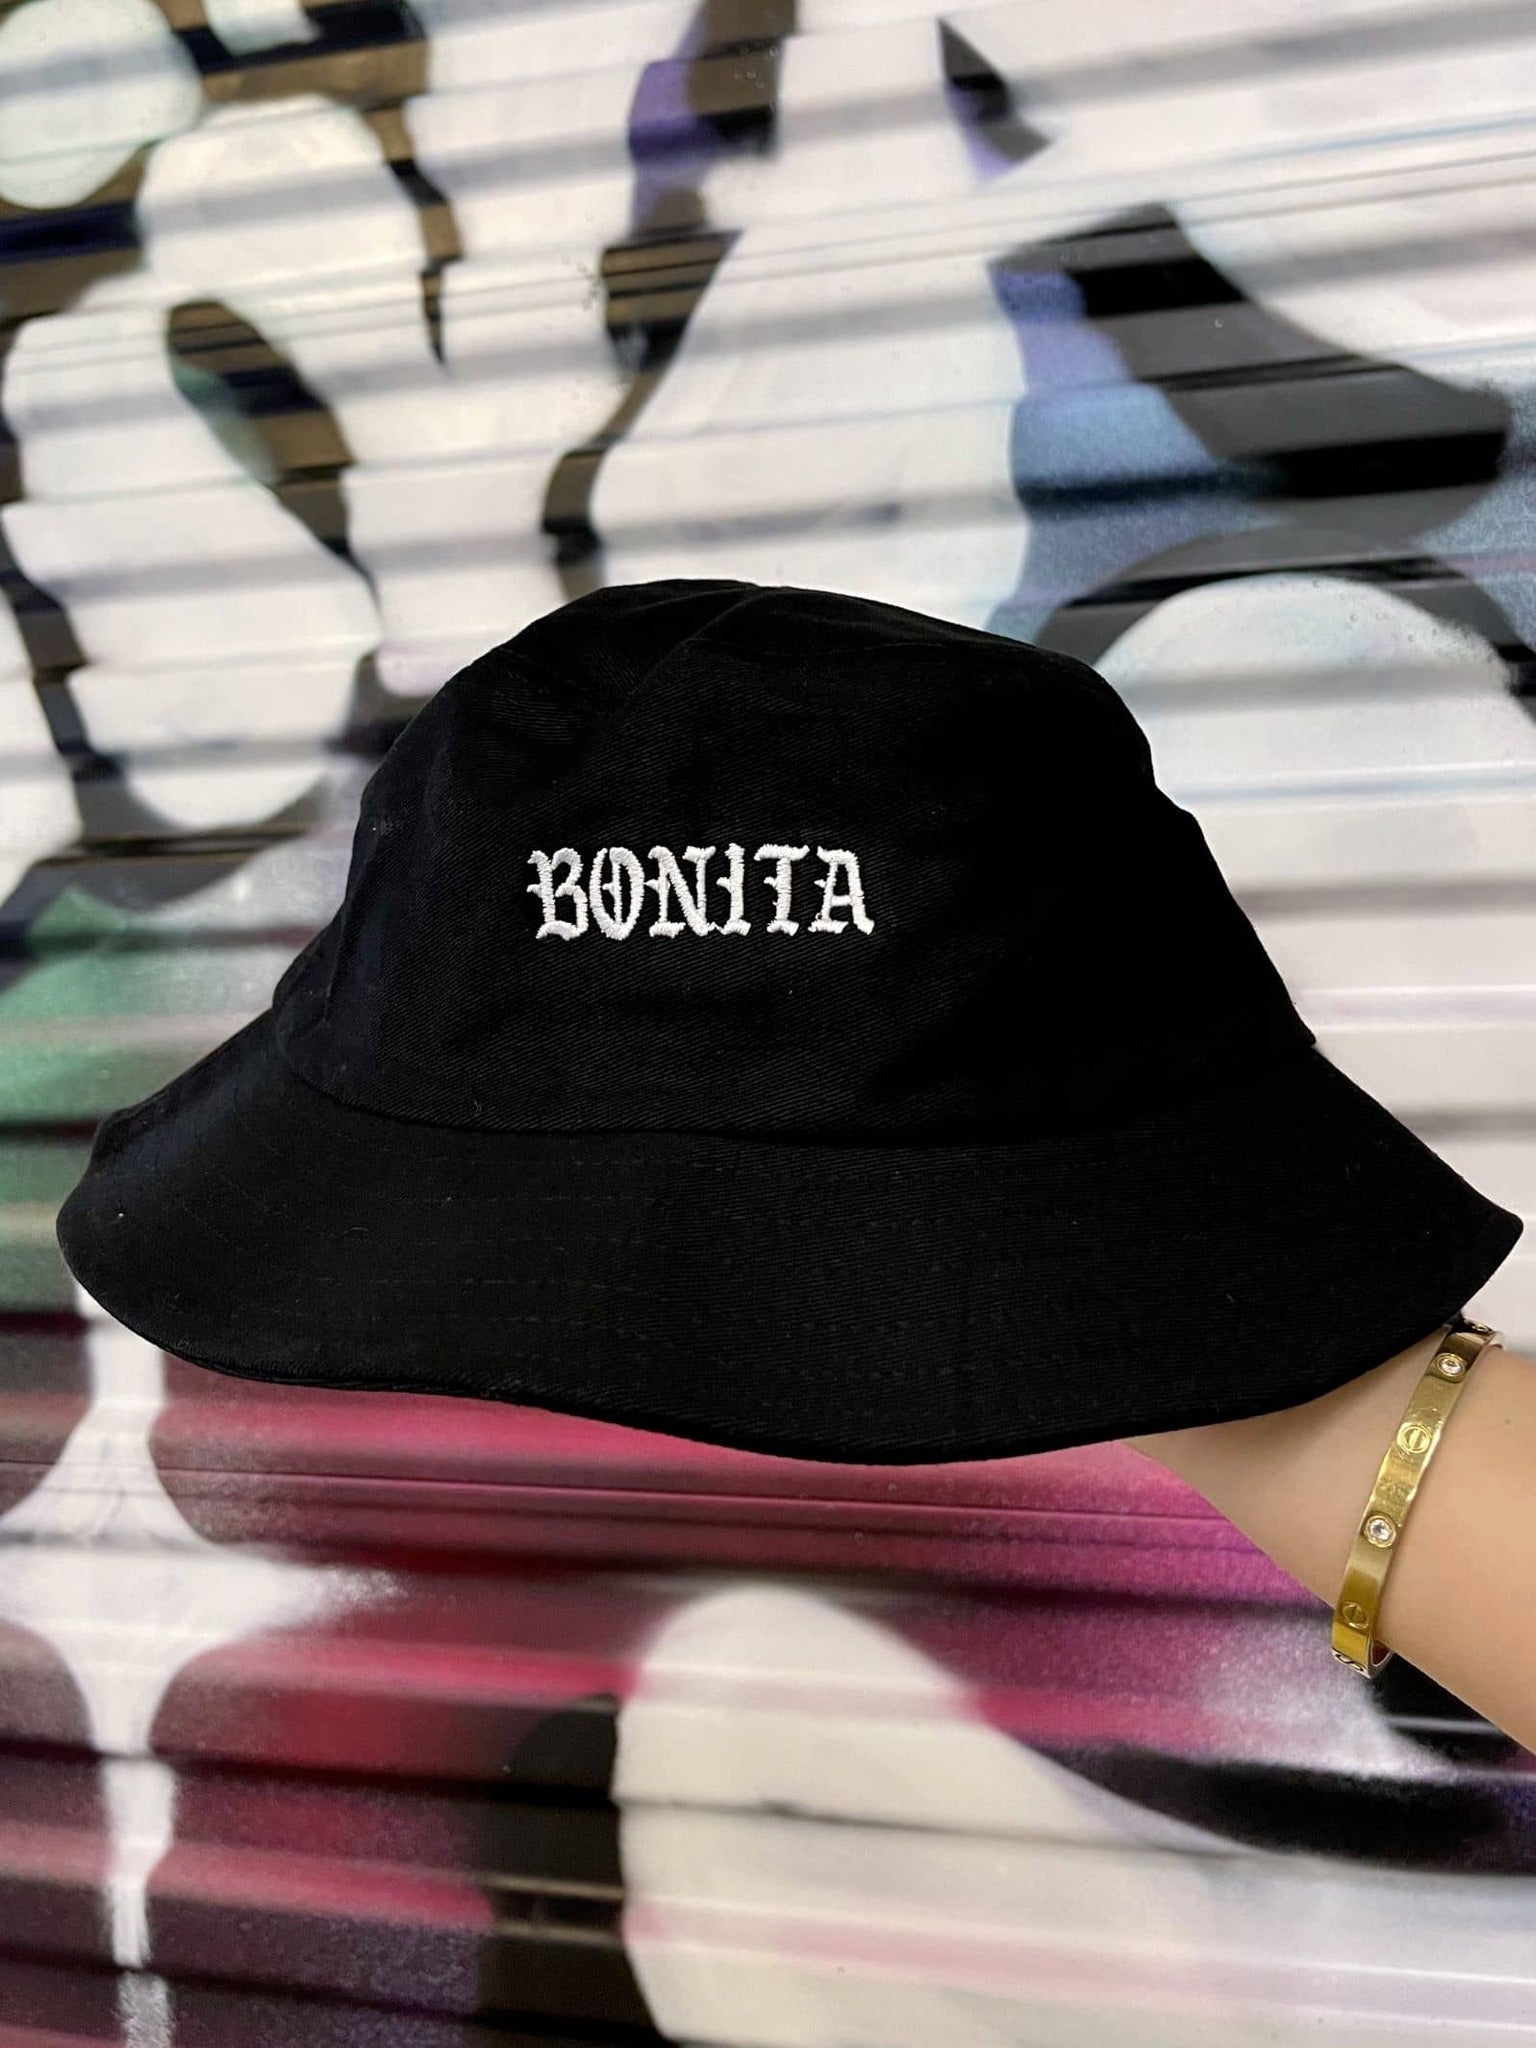 Viva La Bonita Women streetwear black Bonita Bucket hat. Hand holding black Bonita Bucket hat with graffiti background.